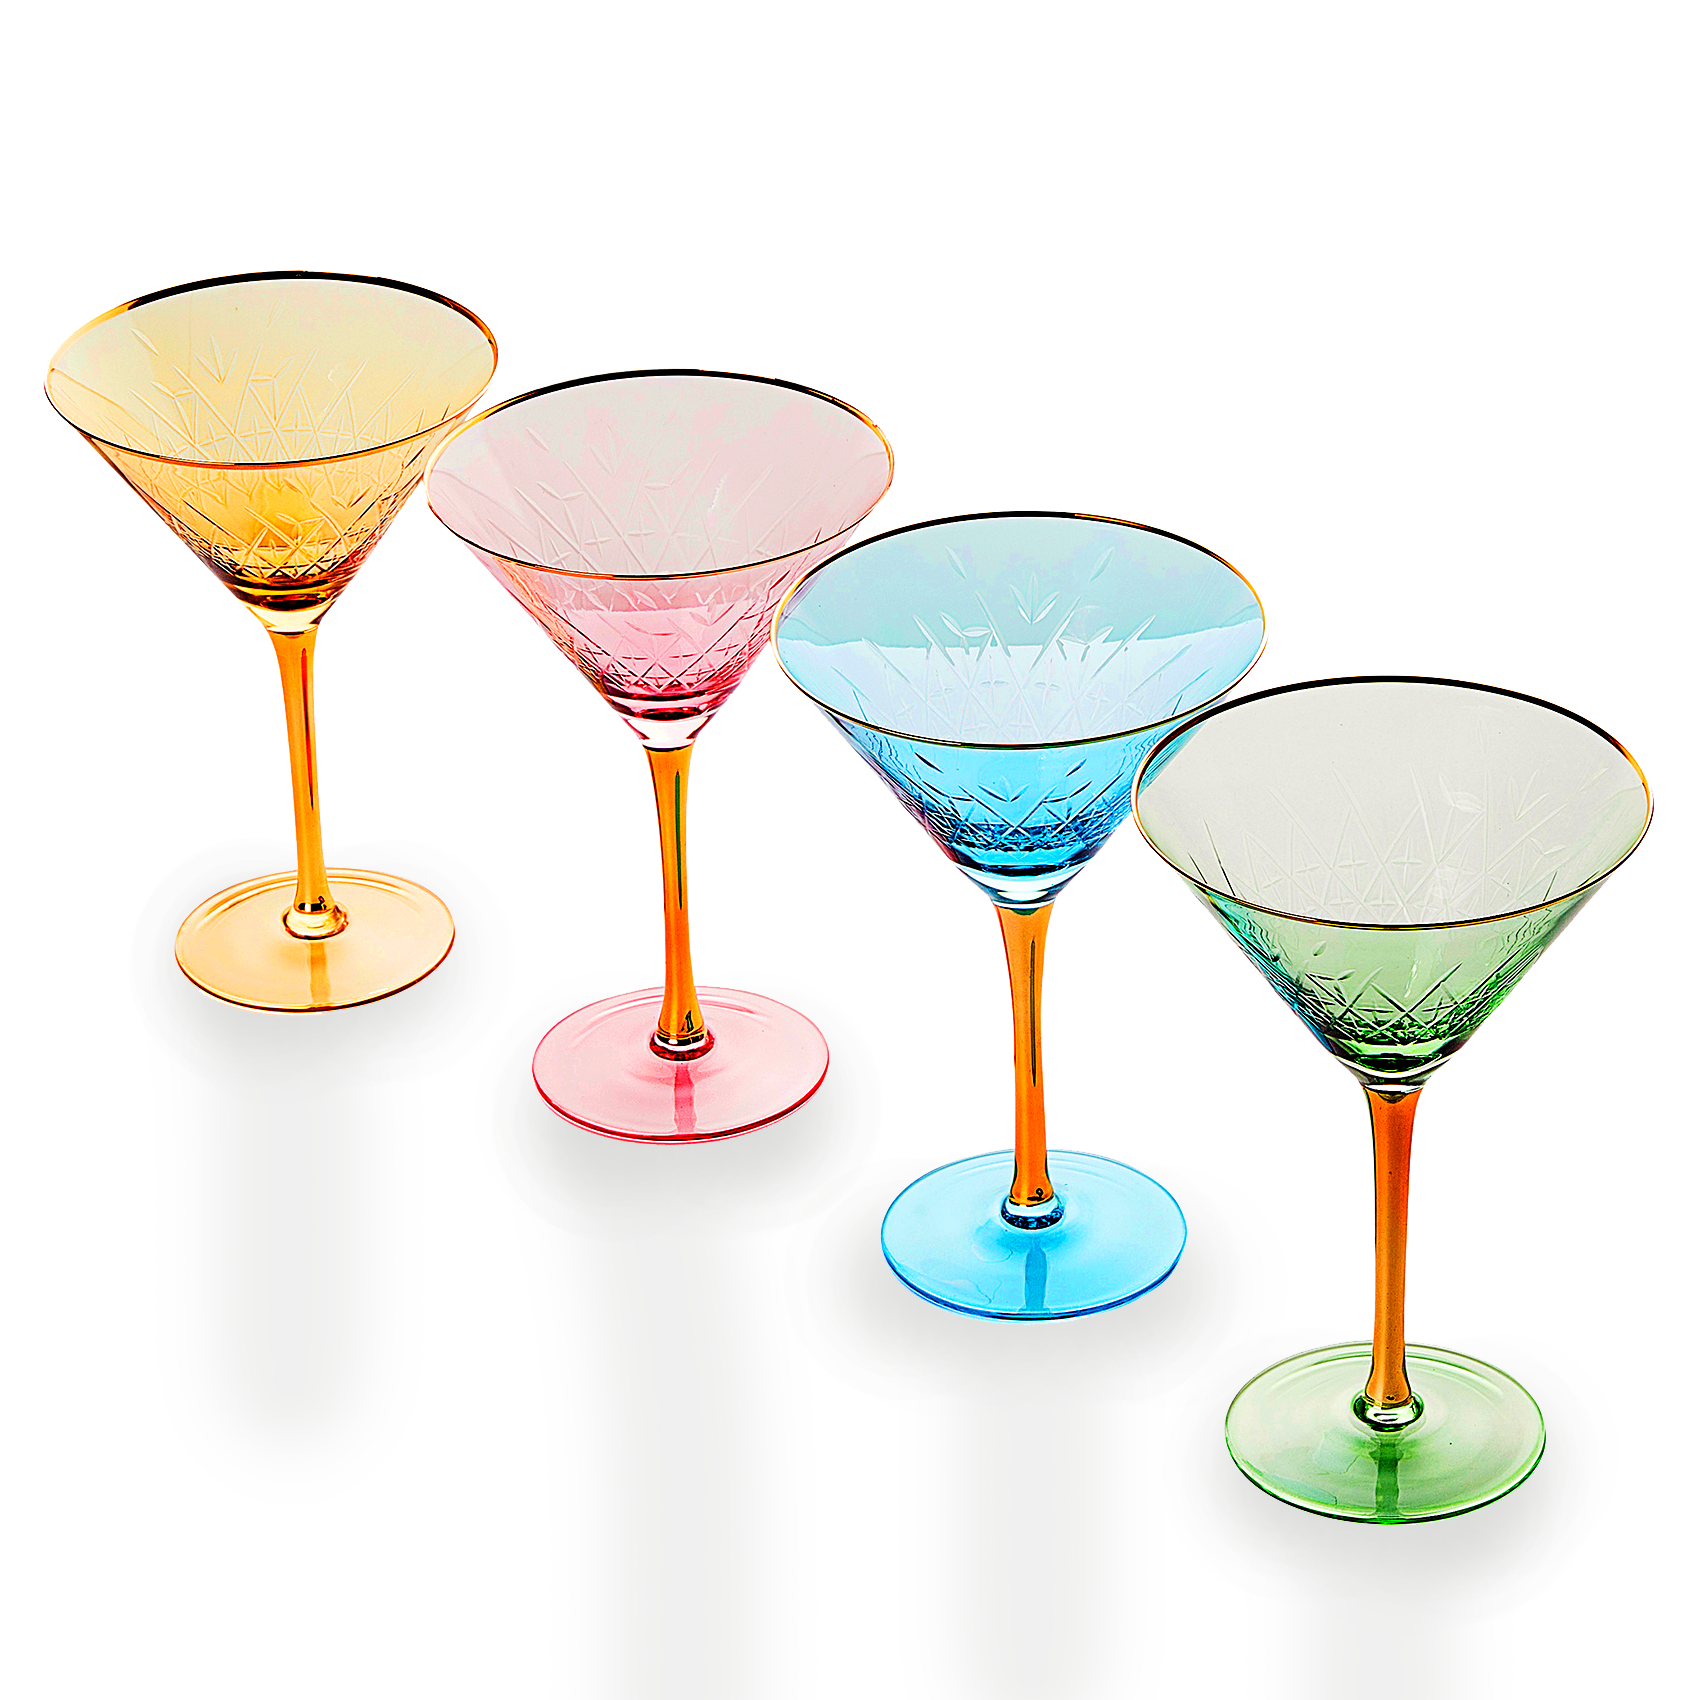 Crystal Martini Glasses Colored - Set of 4 - Stemmed Multi-Color